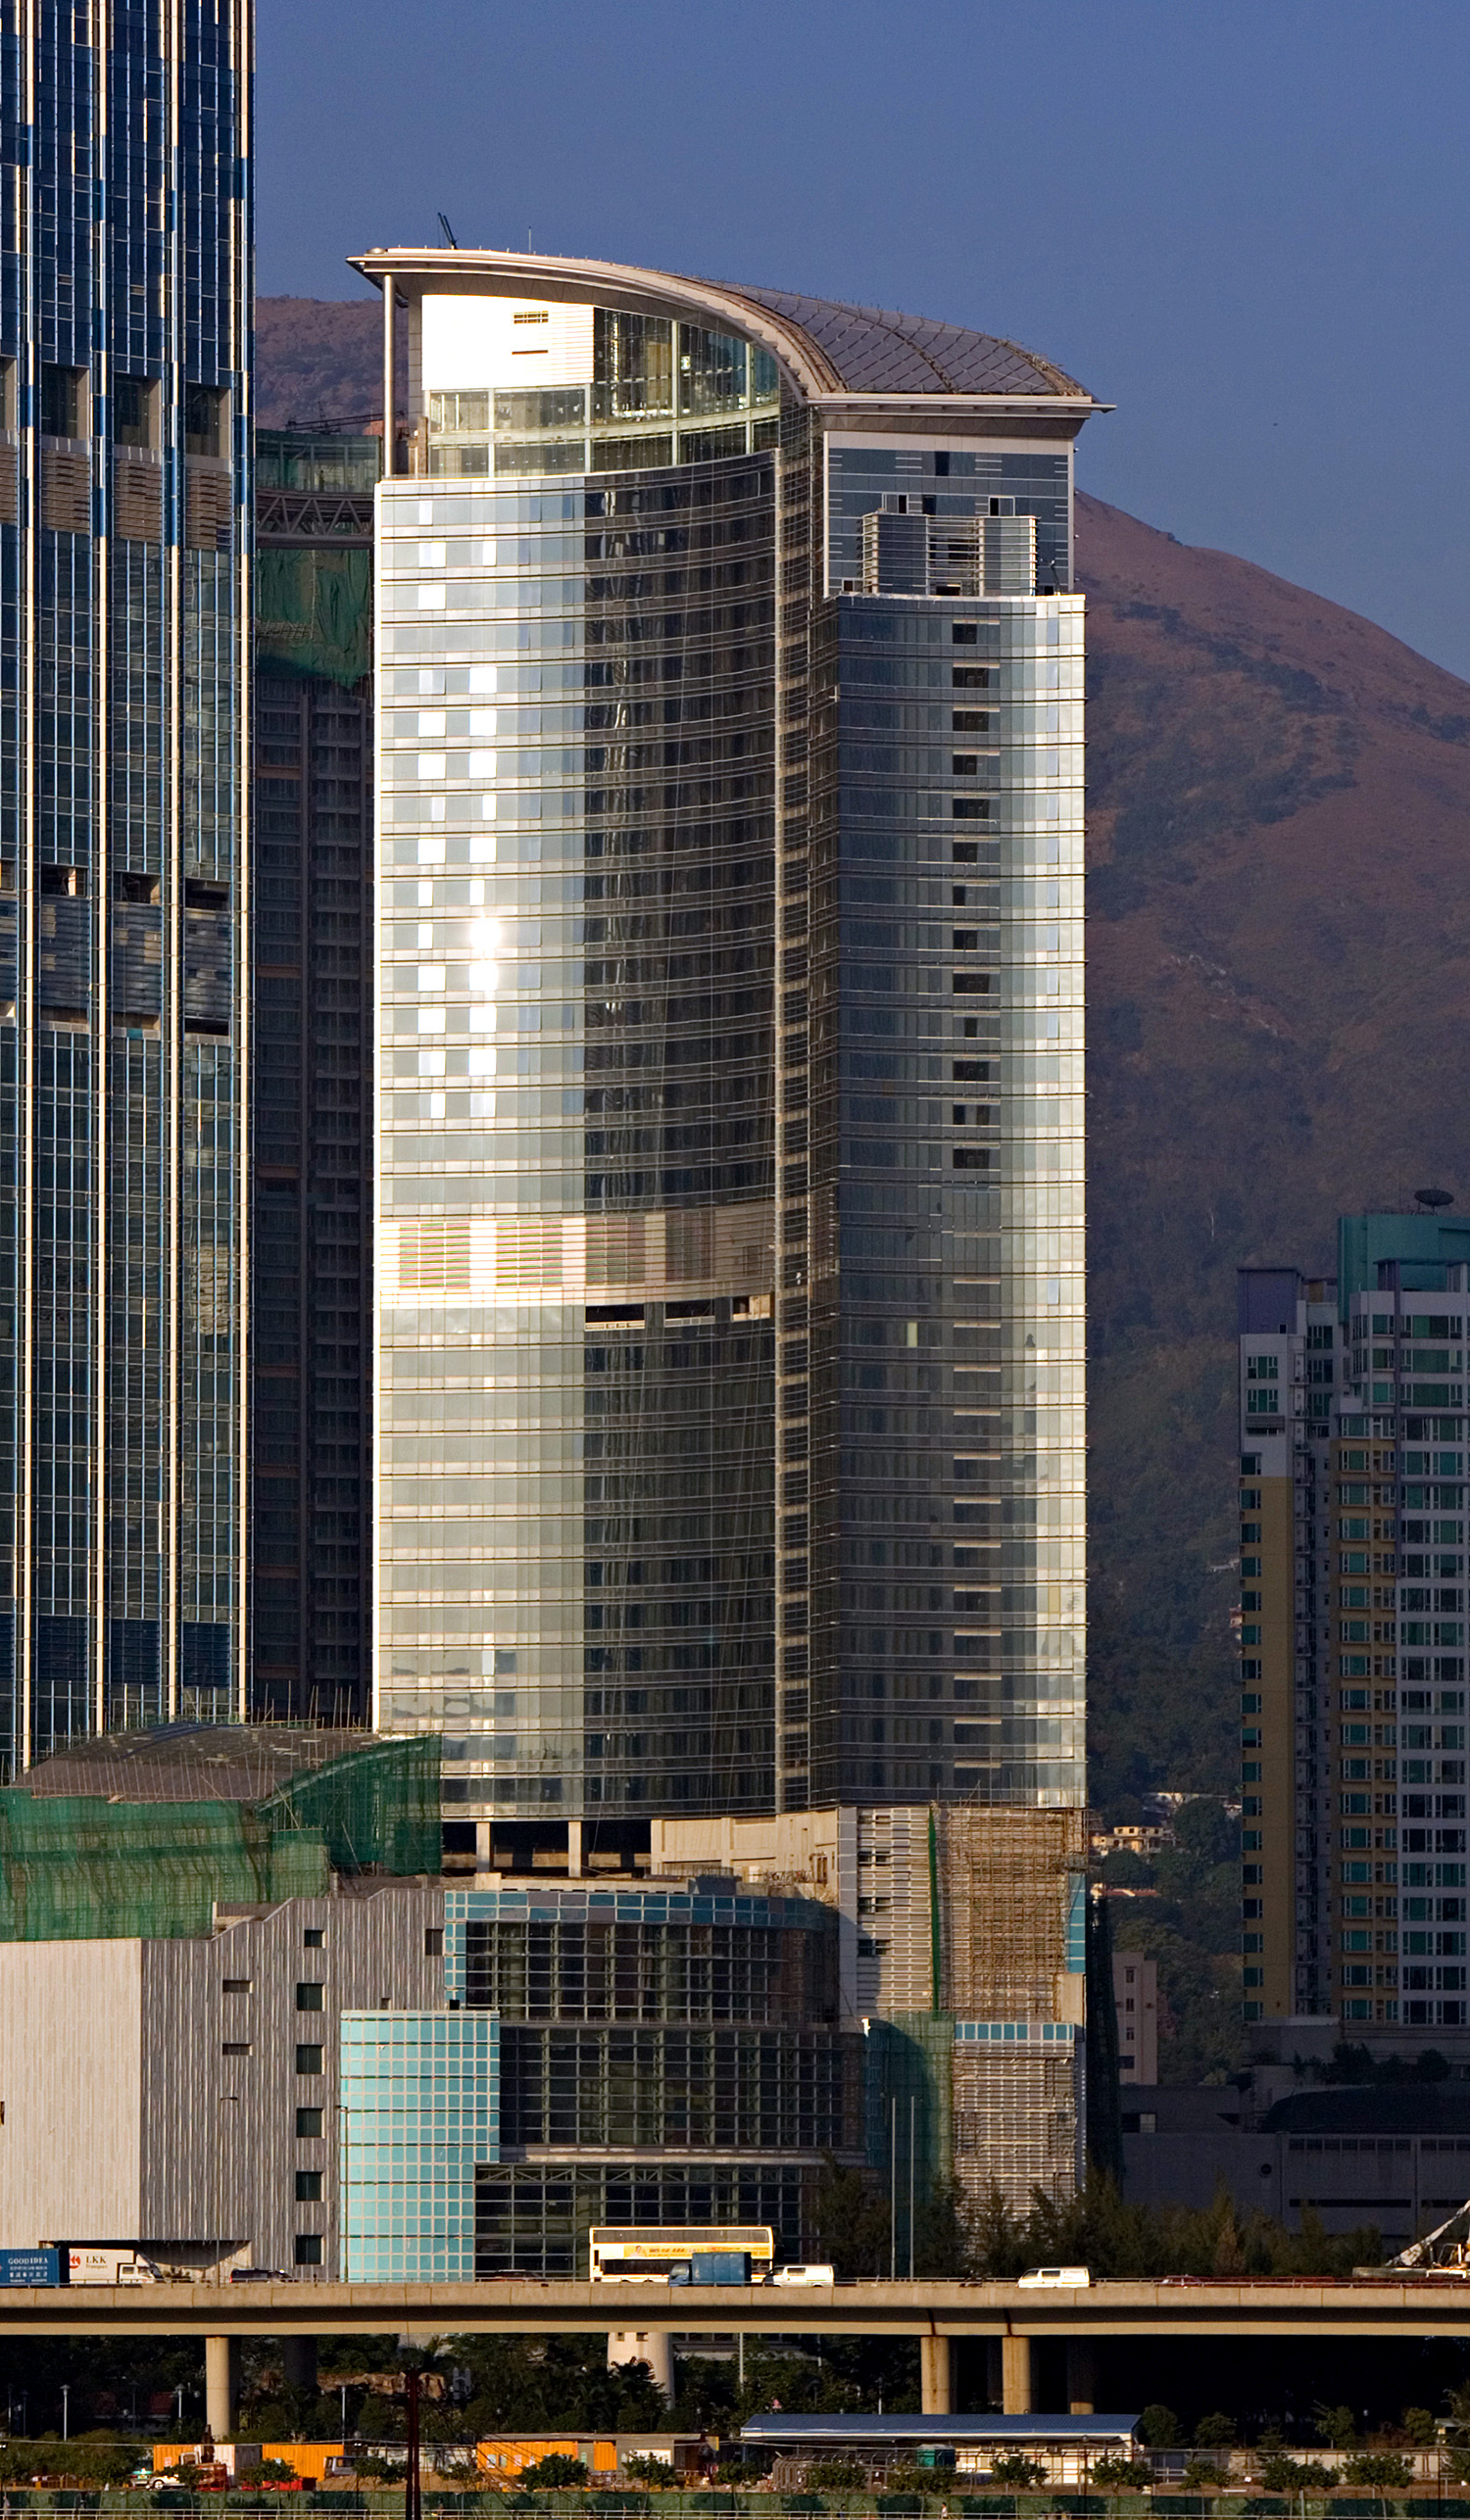 LHotel Nina Tower, Hong Kong - View from Tsing Yi. © Mathias Beinling